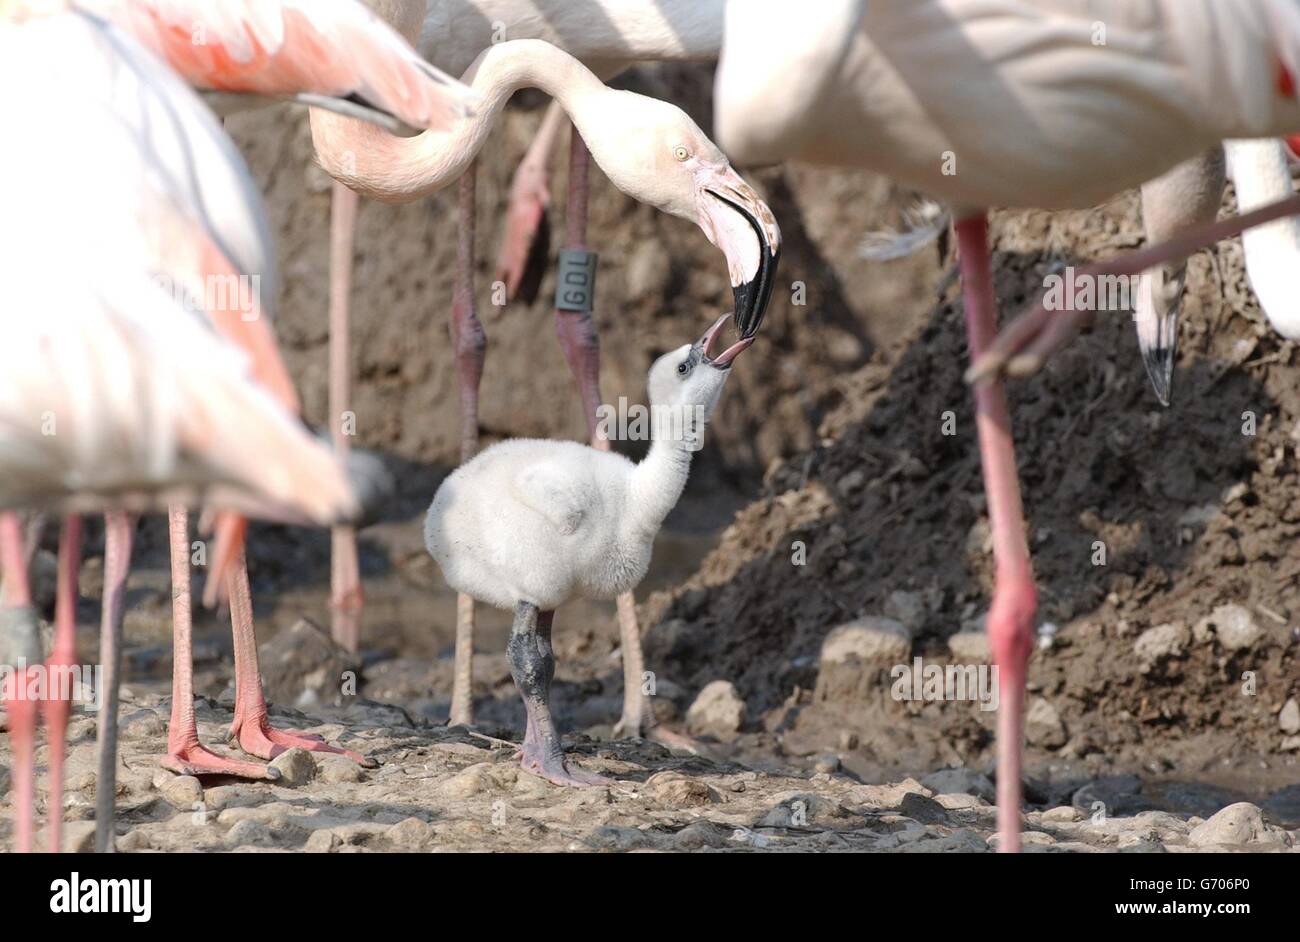 Fütterungszeit für ein Jungvieh im Wildfowl and Wetlands Trust, Slimbridge, Gloucestershire Dienstag, den 11 2004. Mai, um die ungeschlüpften Küken sicher zu halten. Das Personal im Zentrum wechselt größere Flamingo-Eier gegen Holzersatz. Die echten Eier werden kurz nach dem Ablegen aus ihren prekären Sandburg-Schlammnestern entnommen, um das Risiko zu vermeiden, dass sie von den kämpfenden erwachsenen Flamingos abgeschlagen werden. Holznachbildungen werden dann an die Nester genagelt, um alle besorgten Eltern davon zu überzeugen, dass ihre Nachkommen sicher sind. Stockfoto